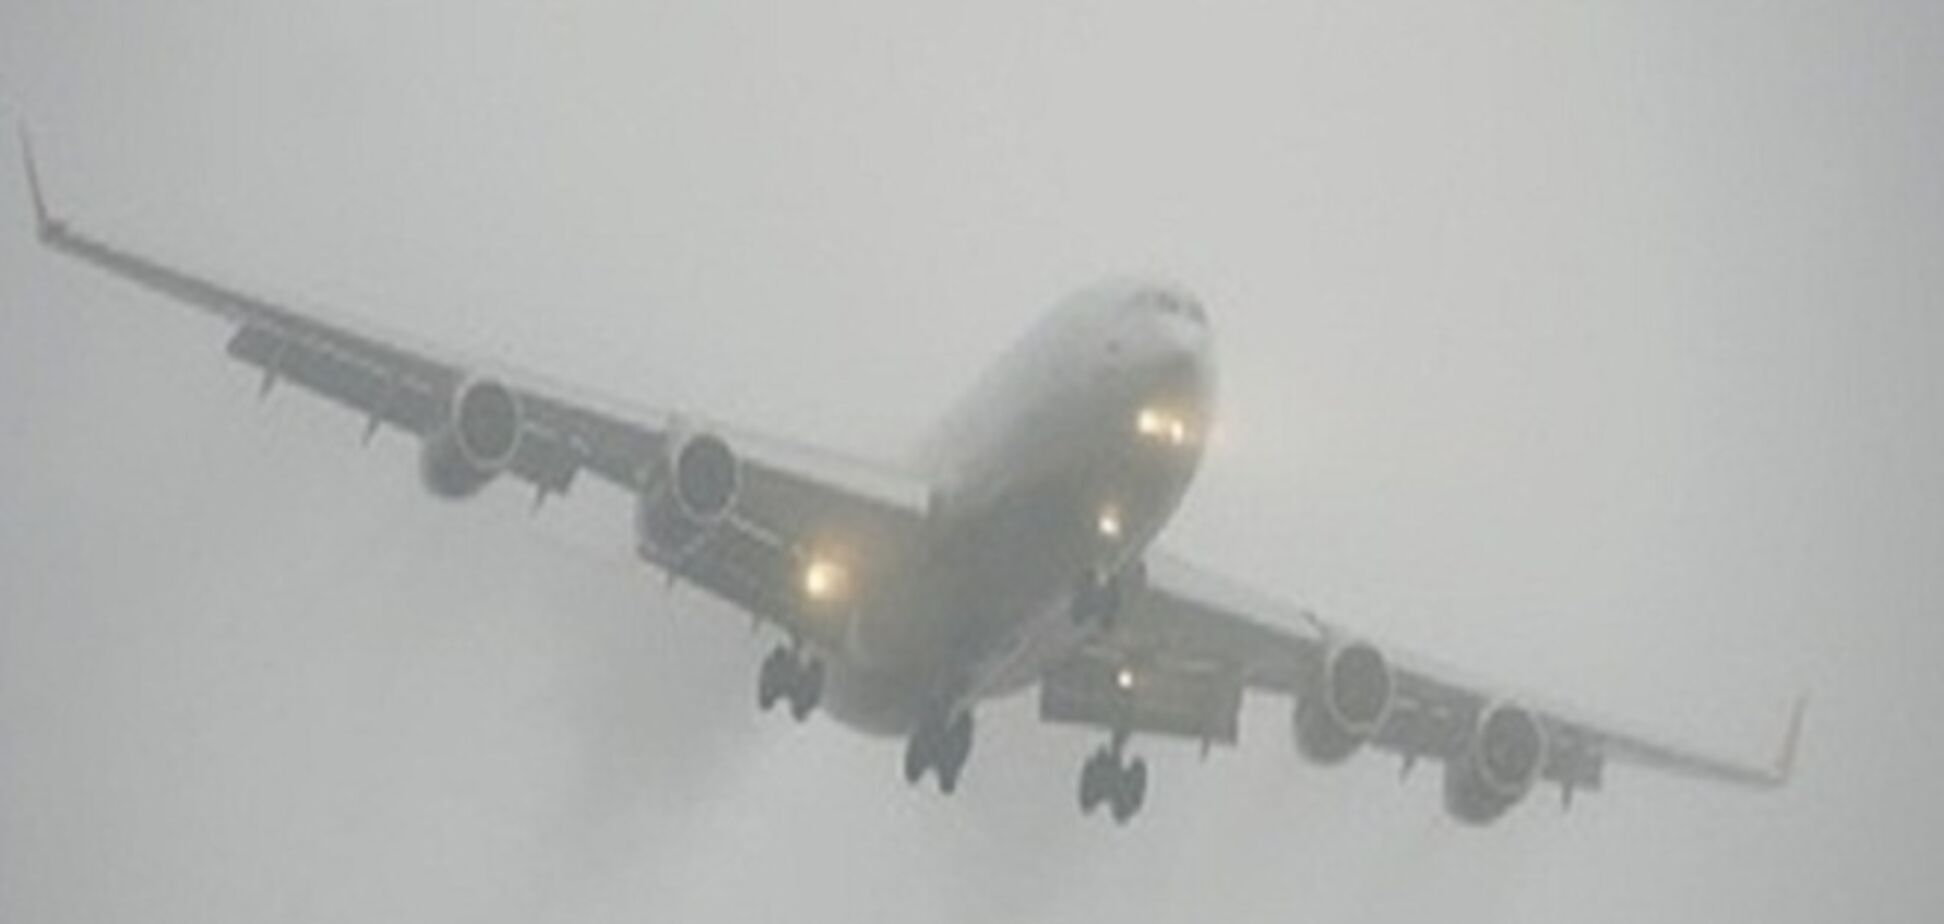 Из-за тумана в аэропорту 'Киев' задерживаются ряд авиарейсов